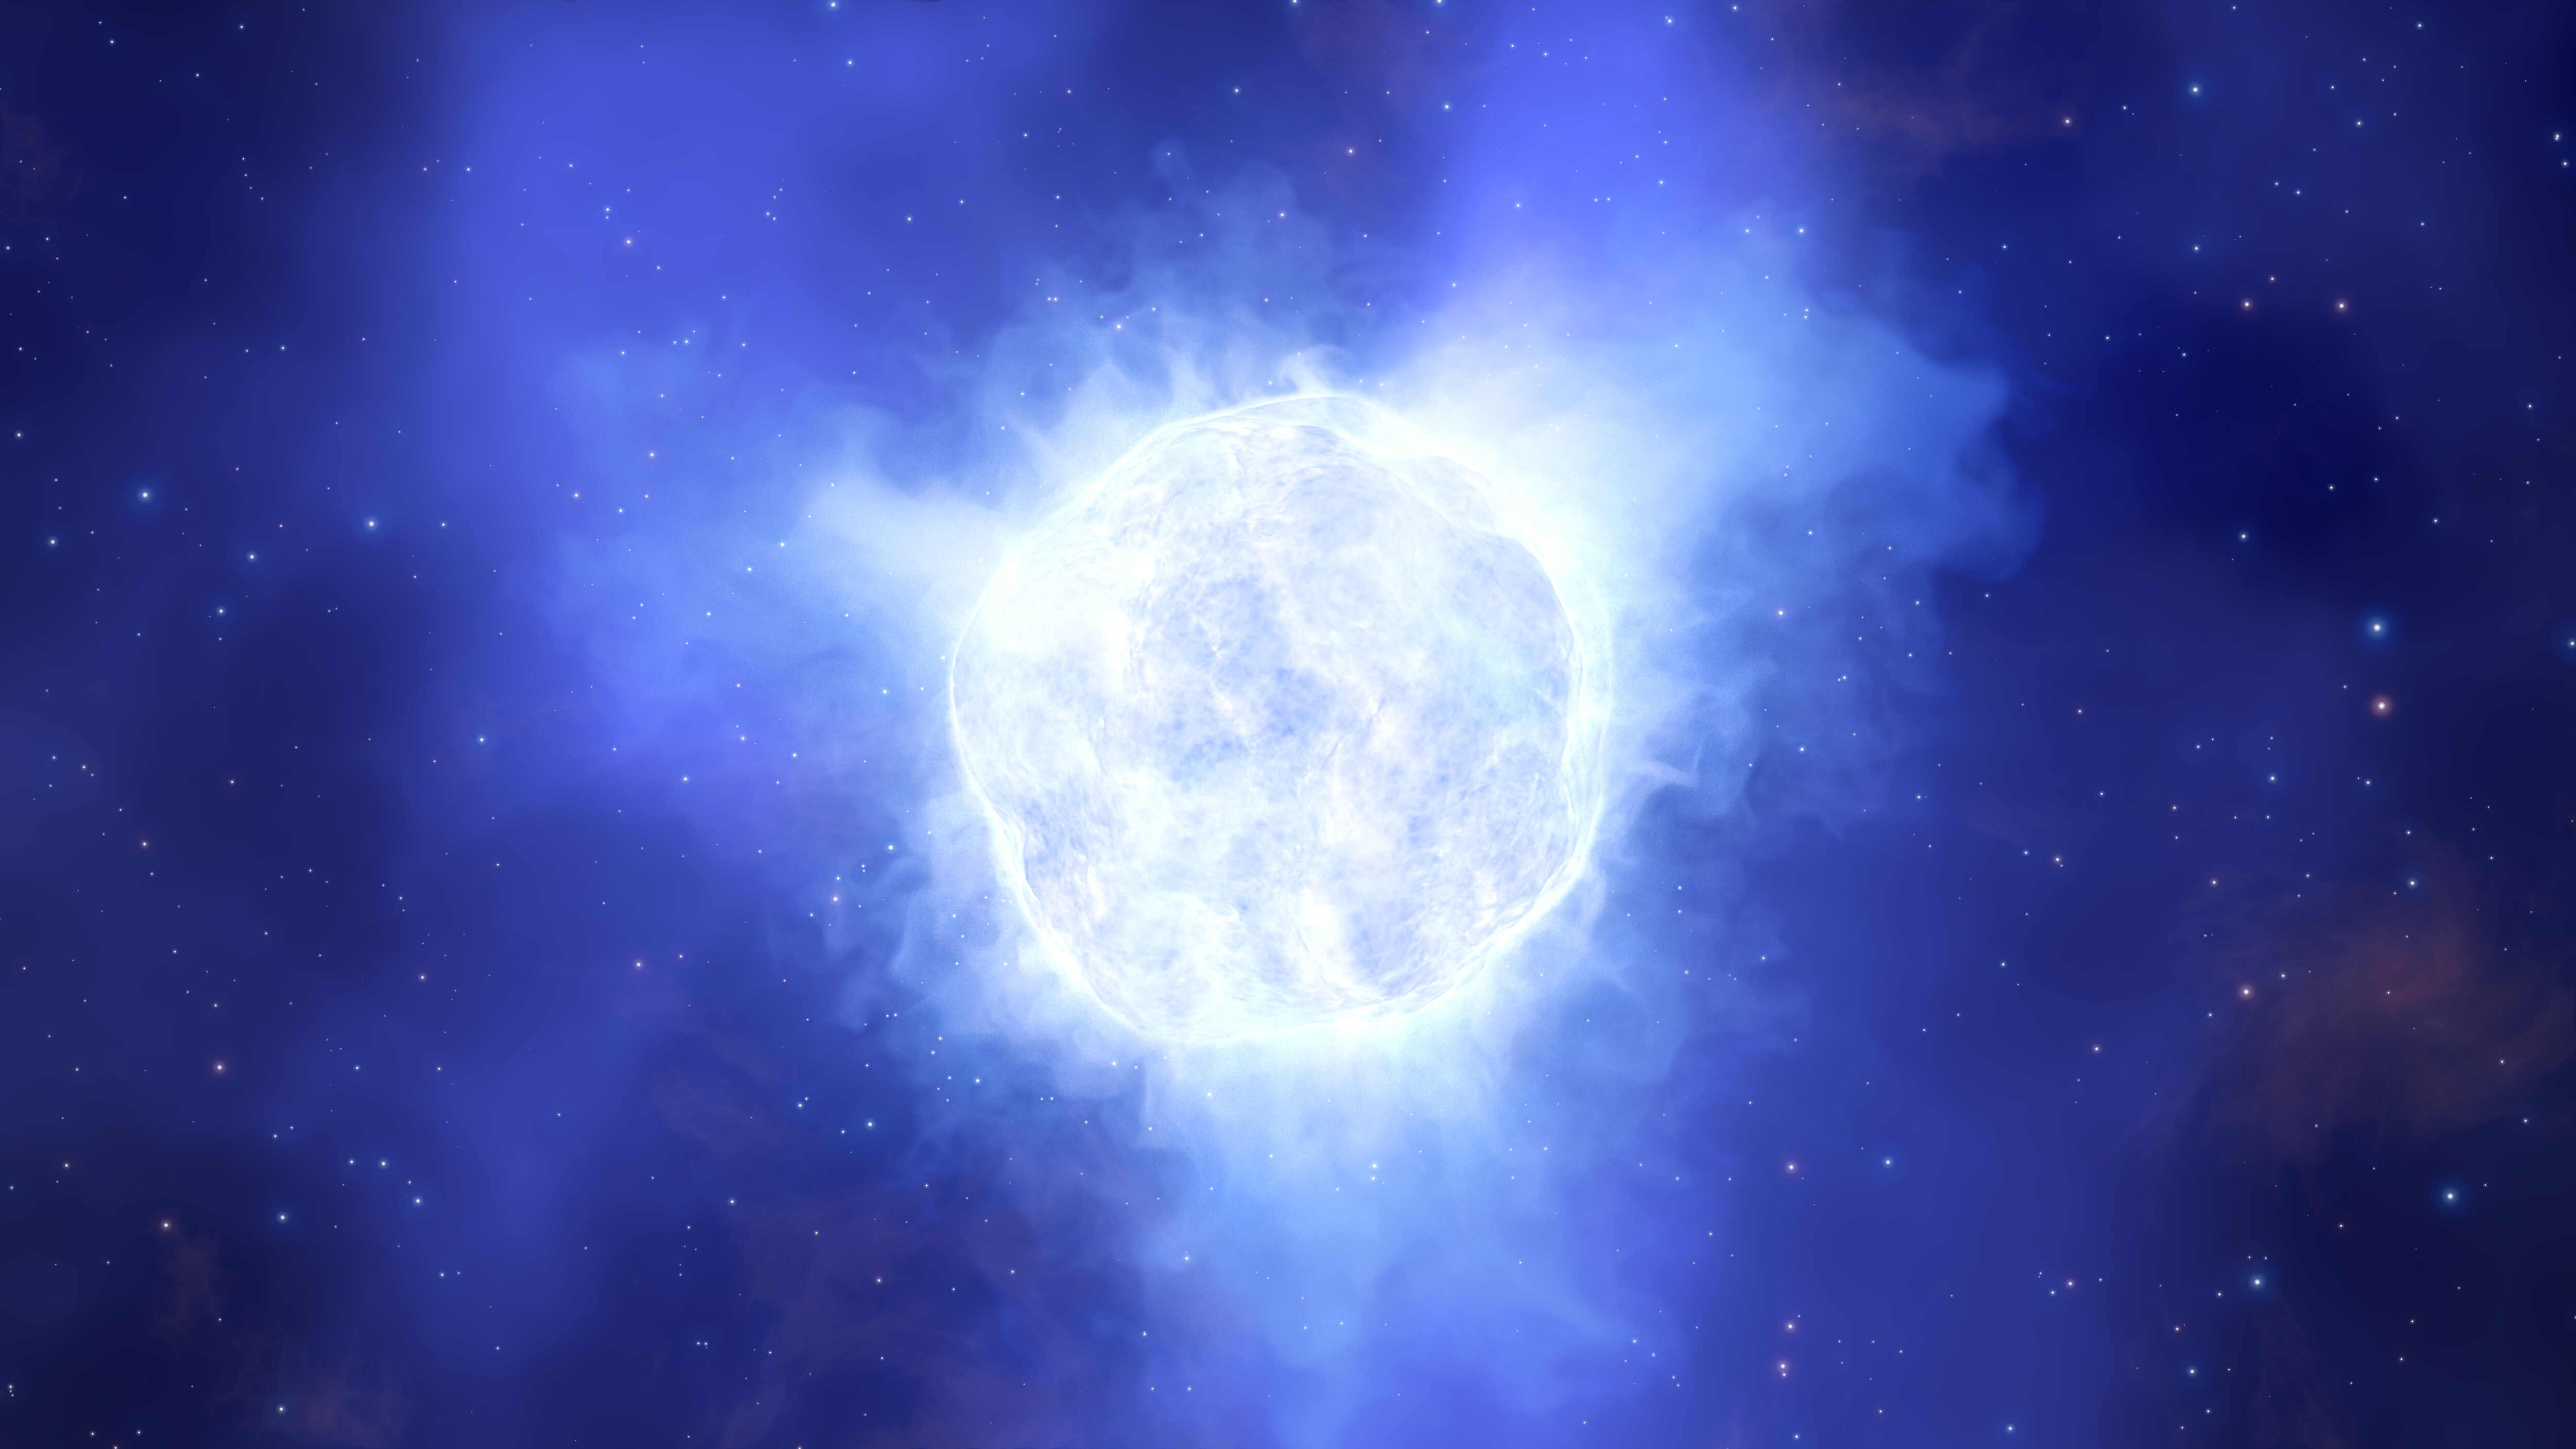 Blue giant. Голубой сверхгигант звезда. R136a1 звезда. Планета r136a1. R136a1.